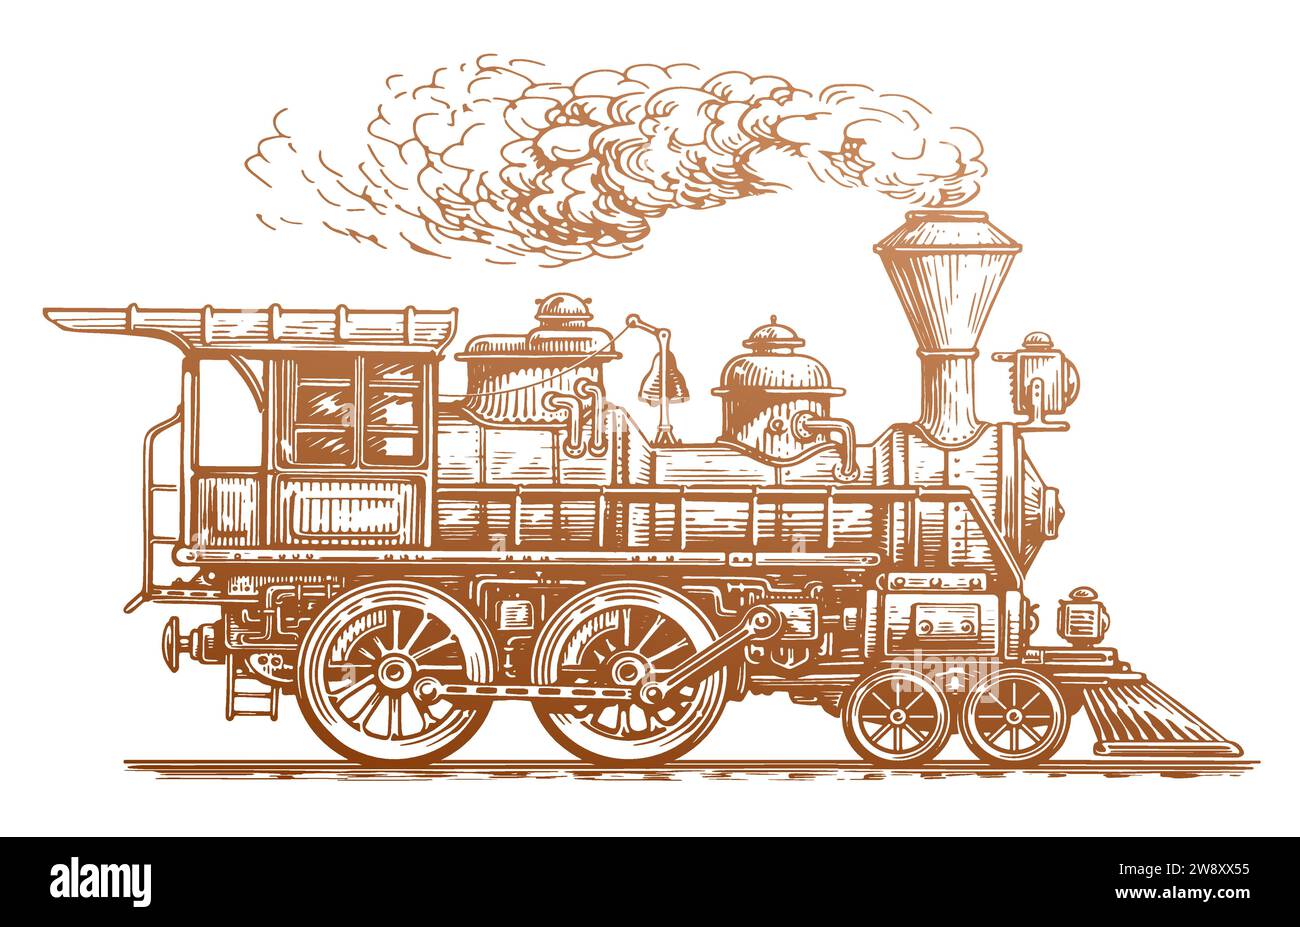 Train rétro, vue latérale. Locomotive à vapeur vintage dessinée à la main dans le style de croquis. Illustration du vecteur de transport Illustration de Vecteur